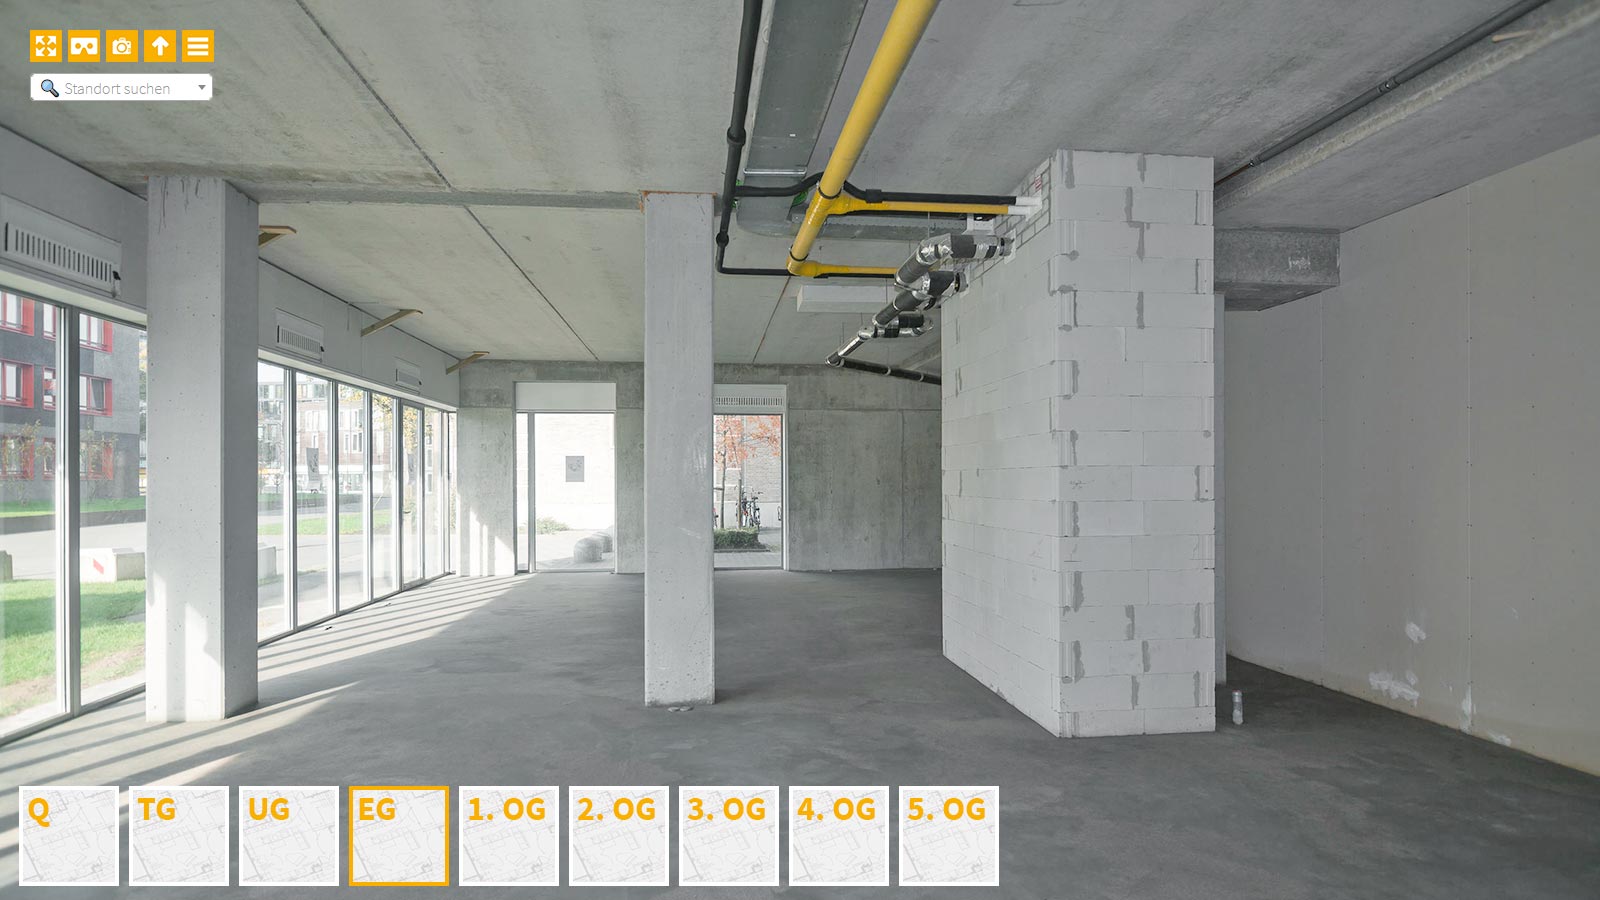 Baudokumentation 360 Grad bei gestörten Projekten in 


	


	


	


	


	


	


	


	


	


	Augsburg









, Bilddokumentation als virtueller Rundgang